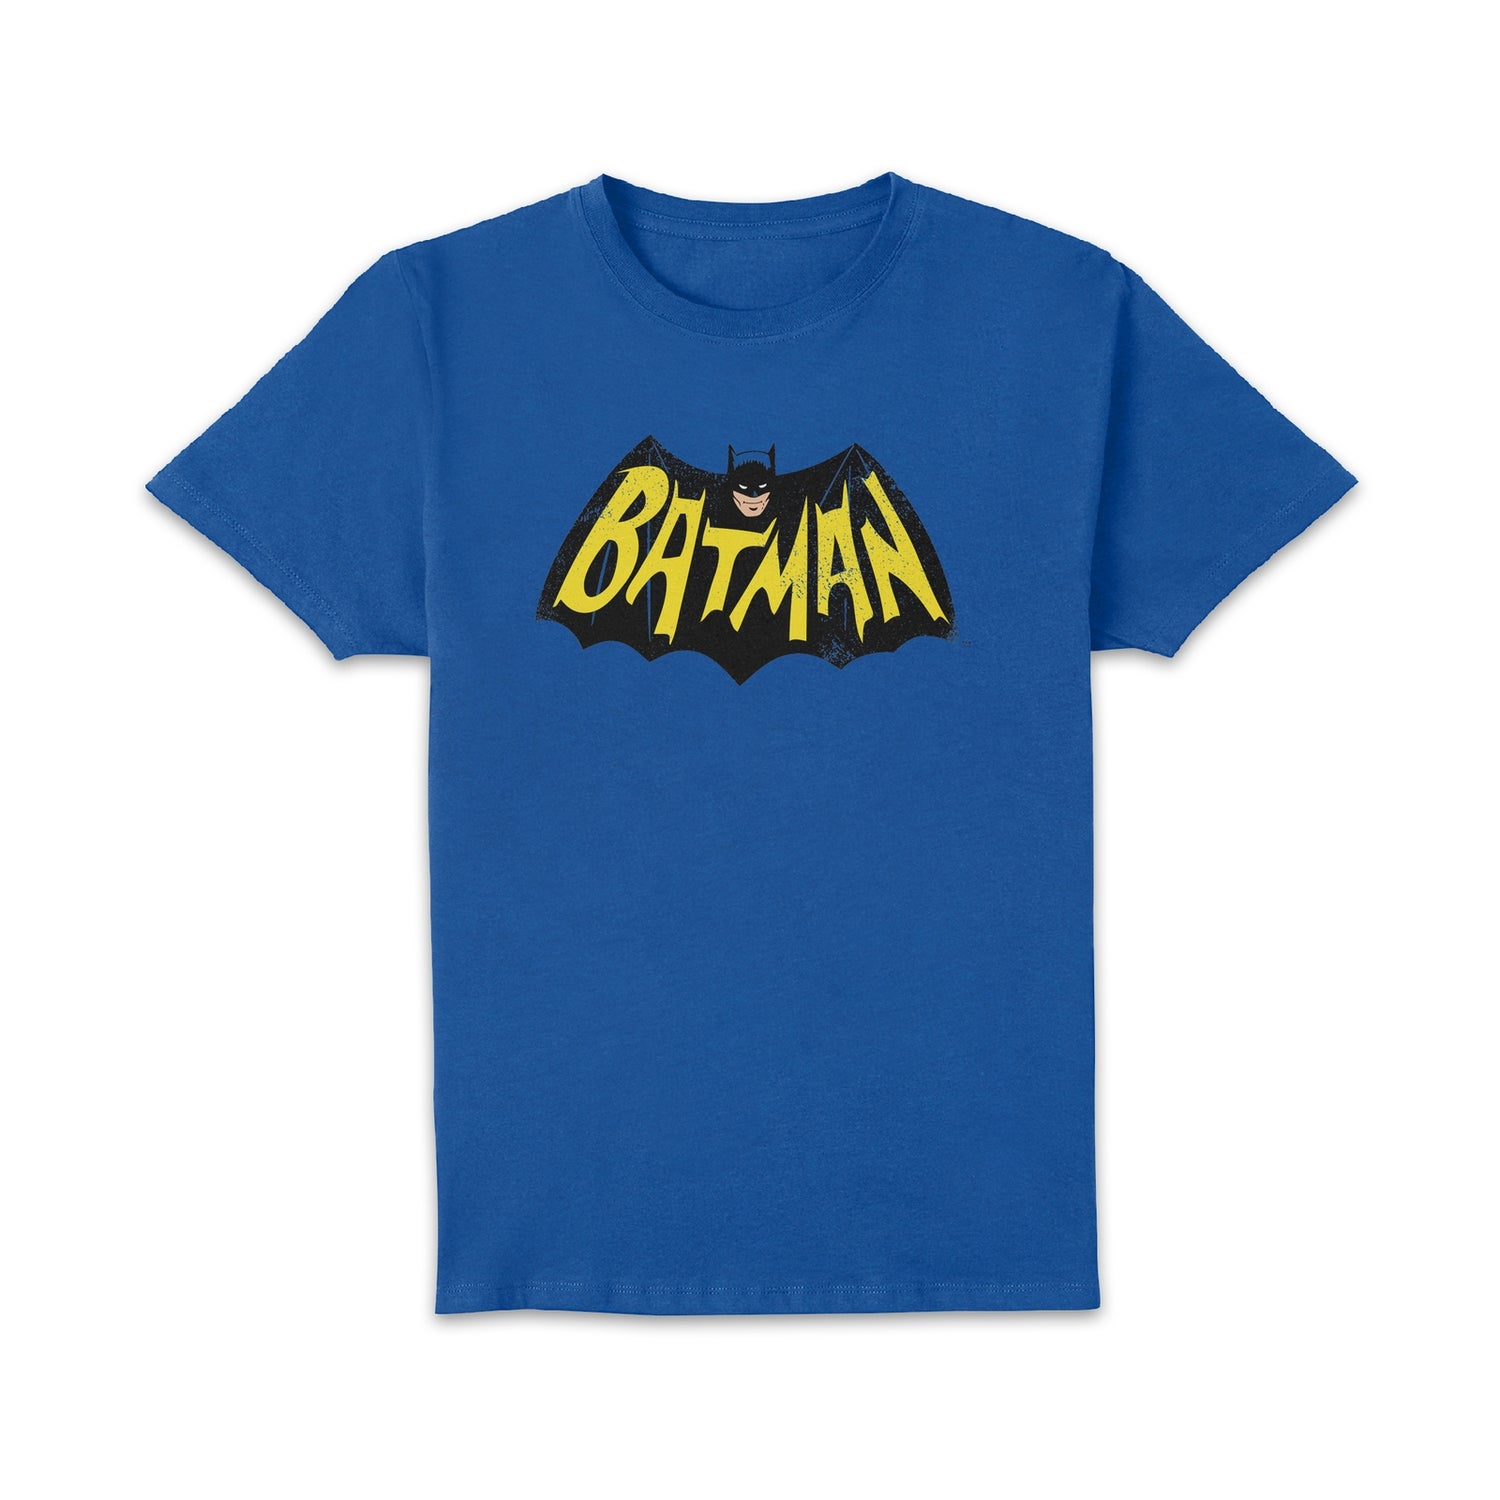 Batman '66 Vintage Men's T-Shirt - Blue